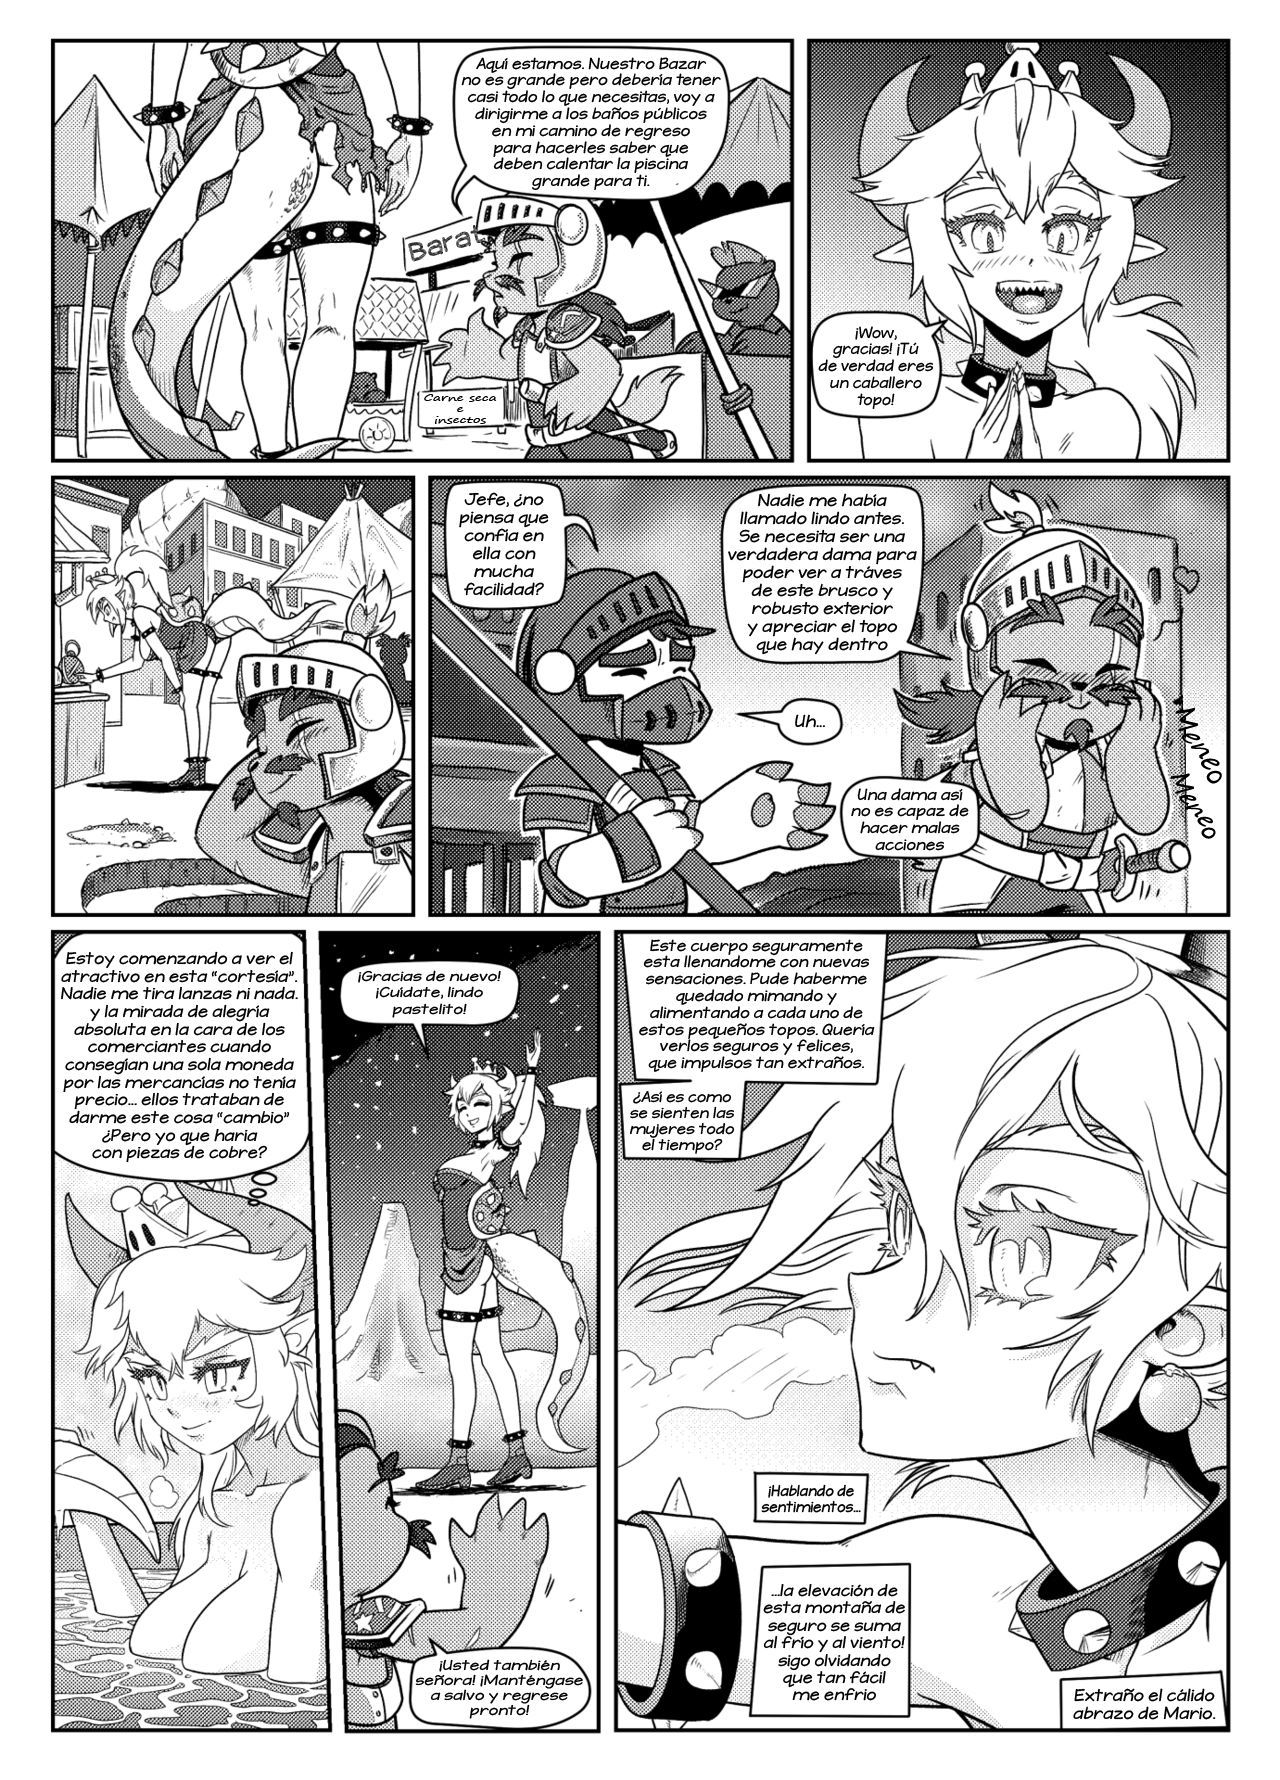 [Pencils] Bowsette Saga Vol.1 Y Vol.2 Completos - Vol.3 En Progreso (Mario Bros.) [Spanish] by Arkoniusx 18